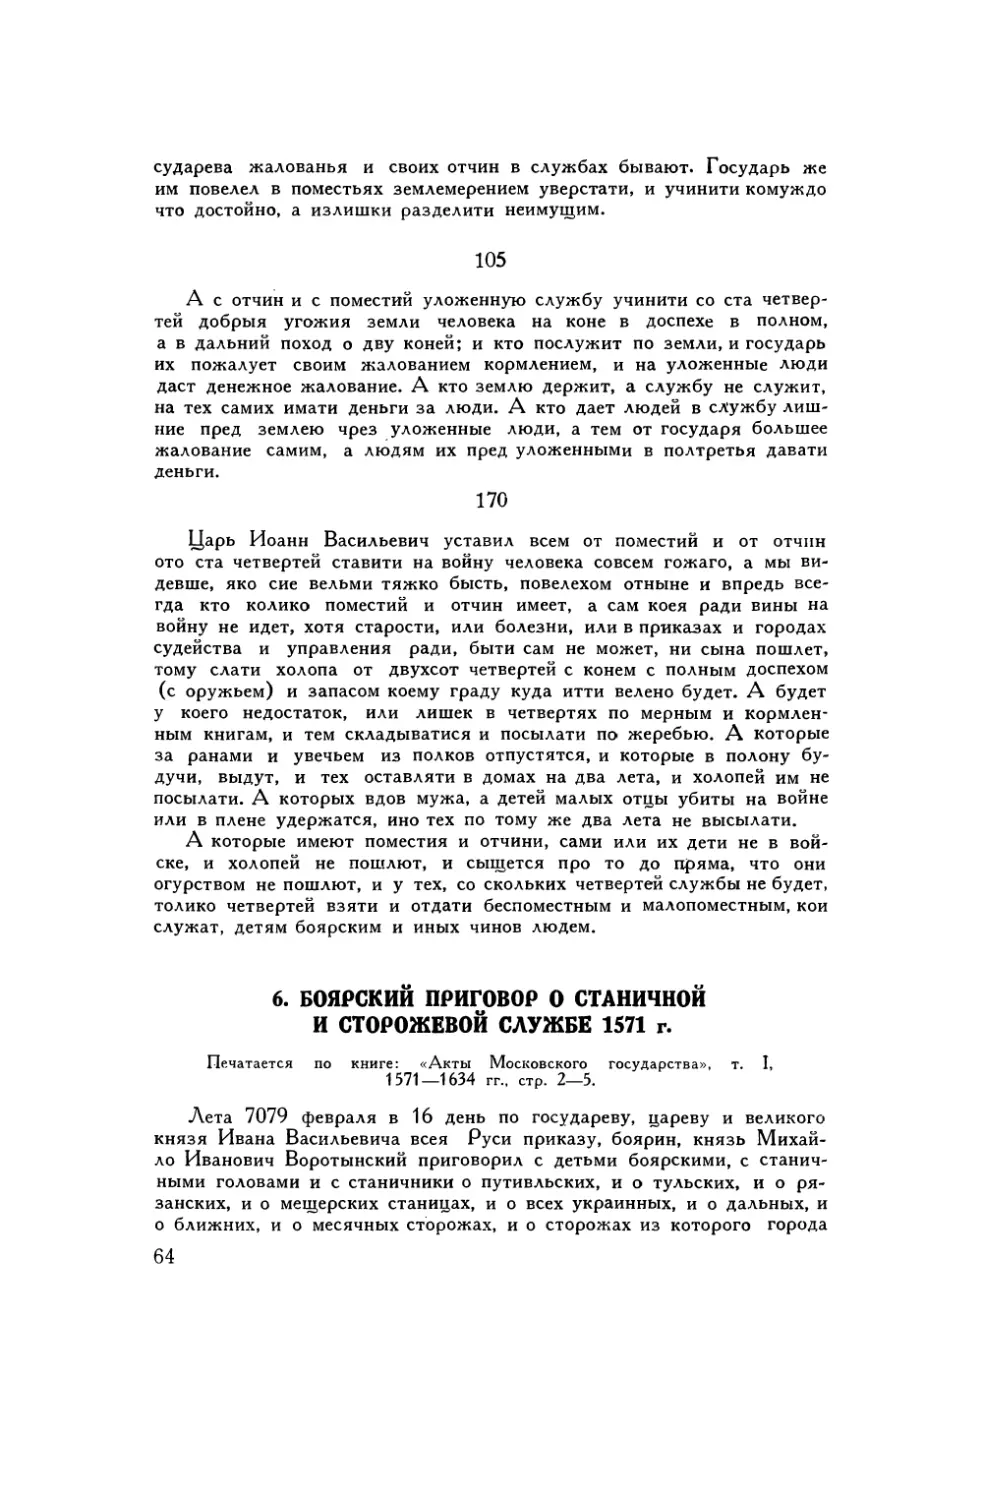 6. Боярский приговор о станичной и сторожевой службе 1571 г.